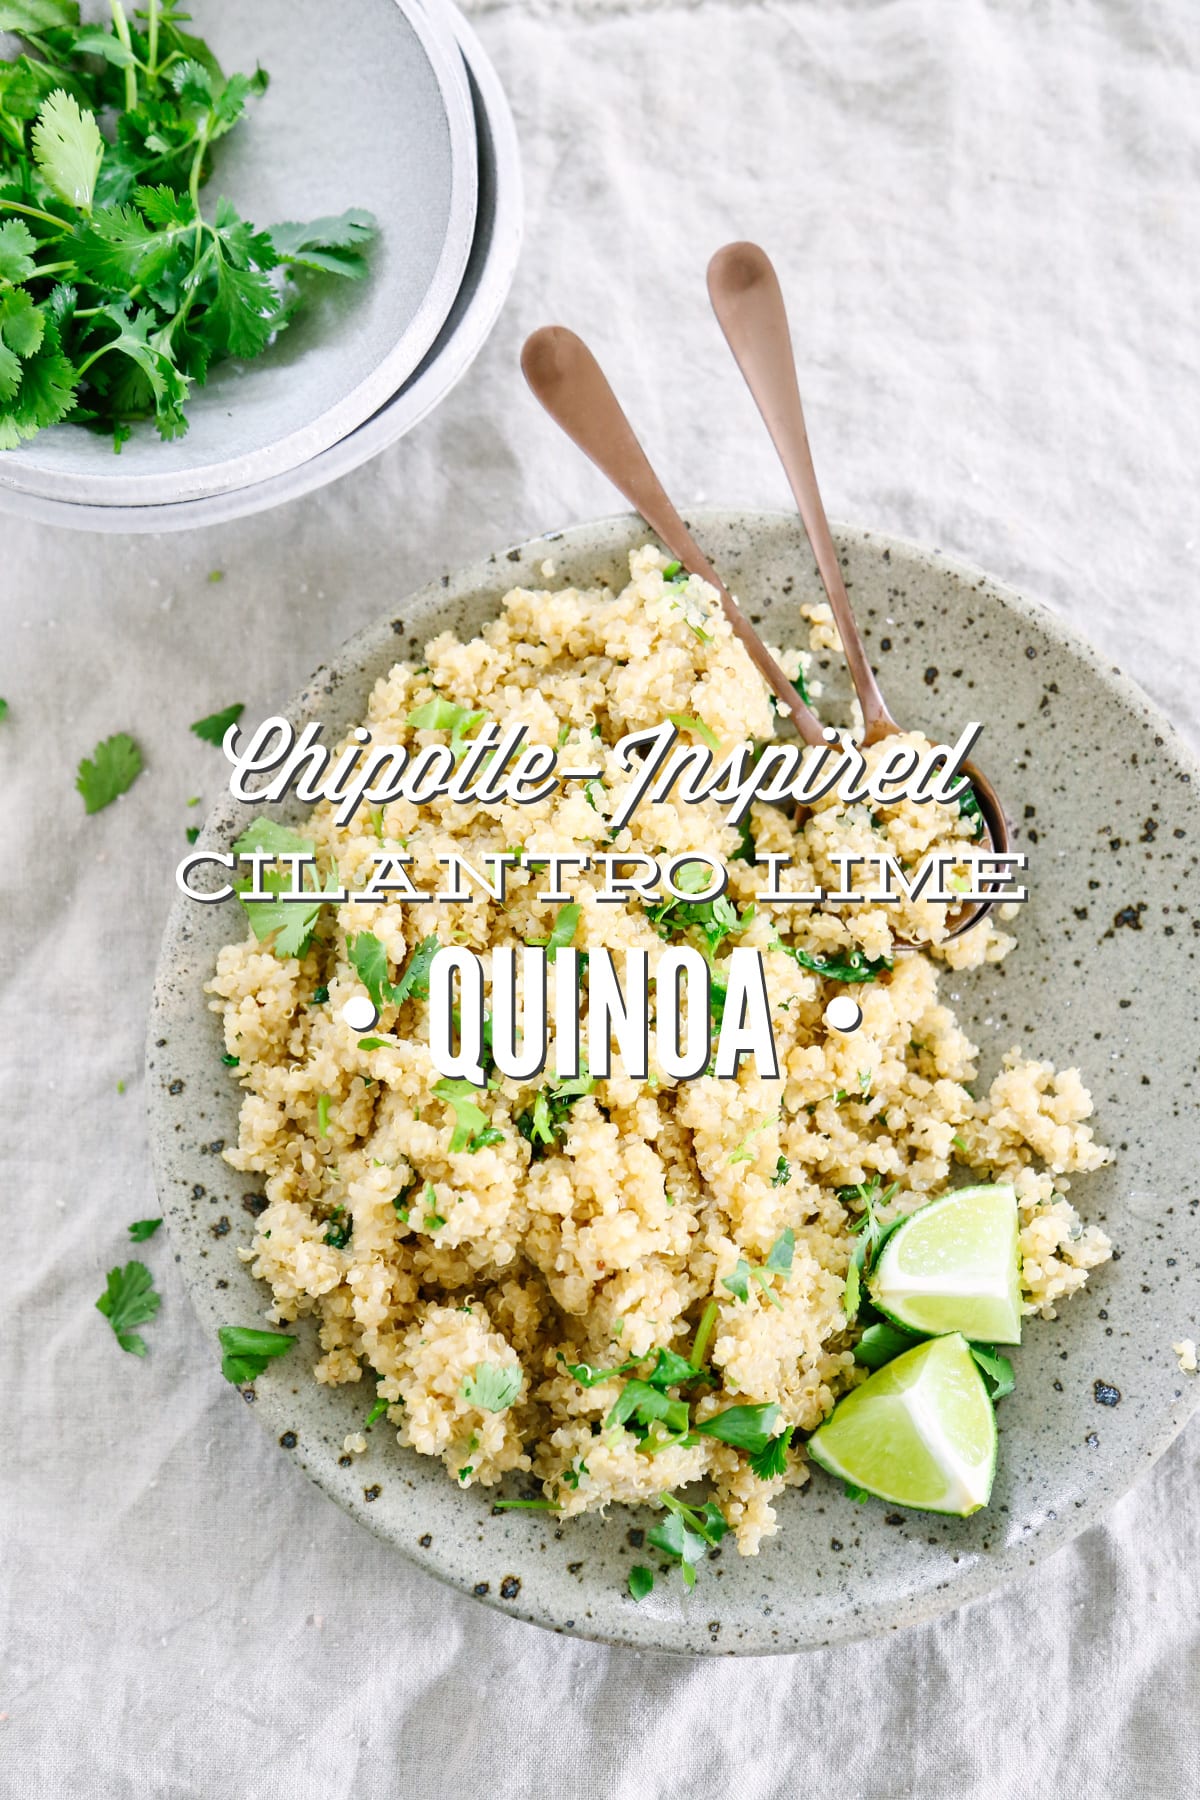 Chipotle-Inspired Cilantro Lime Quinoa